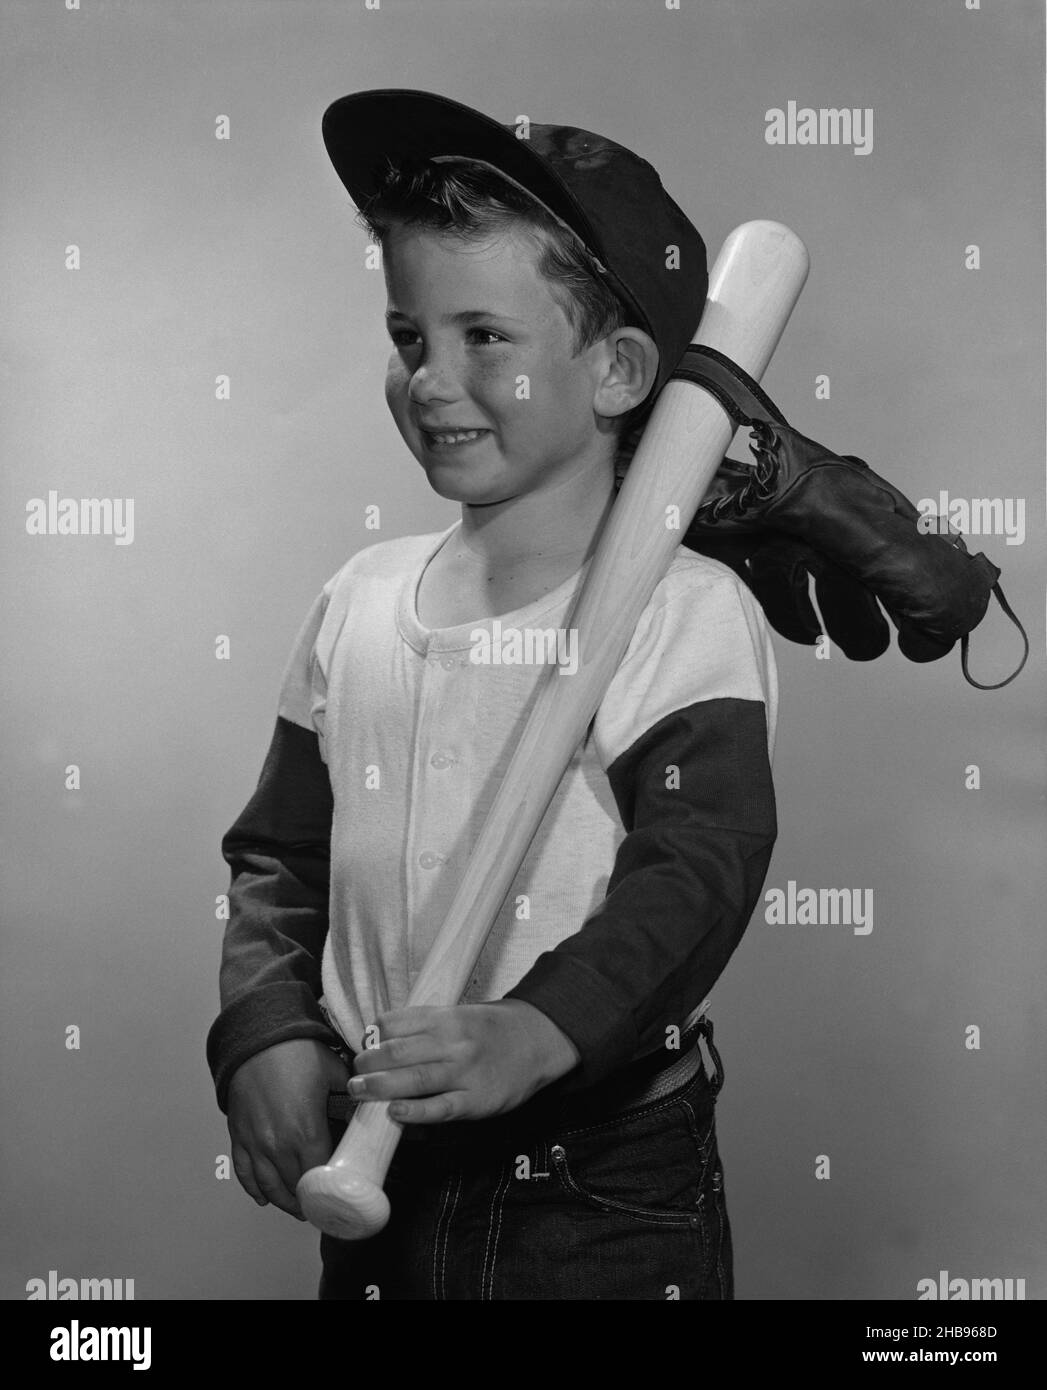 Junge in langärmeligen Baseballhemd und Baseballhut, der zur Seite schaut,  mit dem Schläger, der über seine Schulter gestrickter Schläger, mit dem  Handschuh, der am Schläger angehängt ist. 1965 Stockfotografie - Alamy